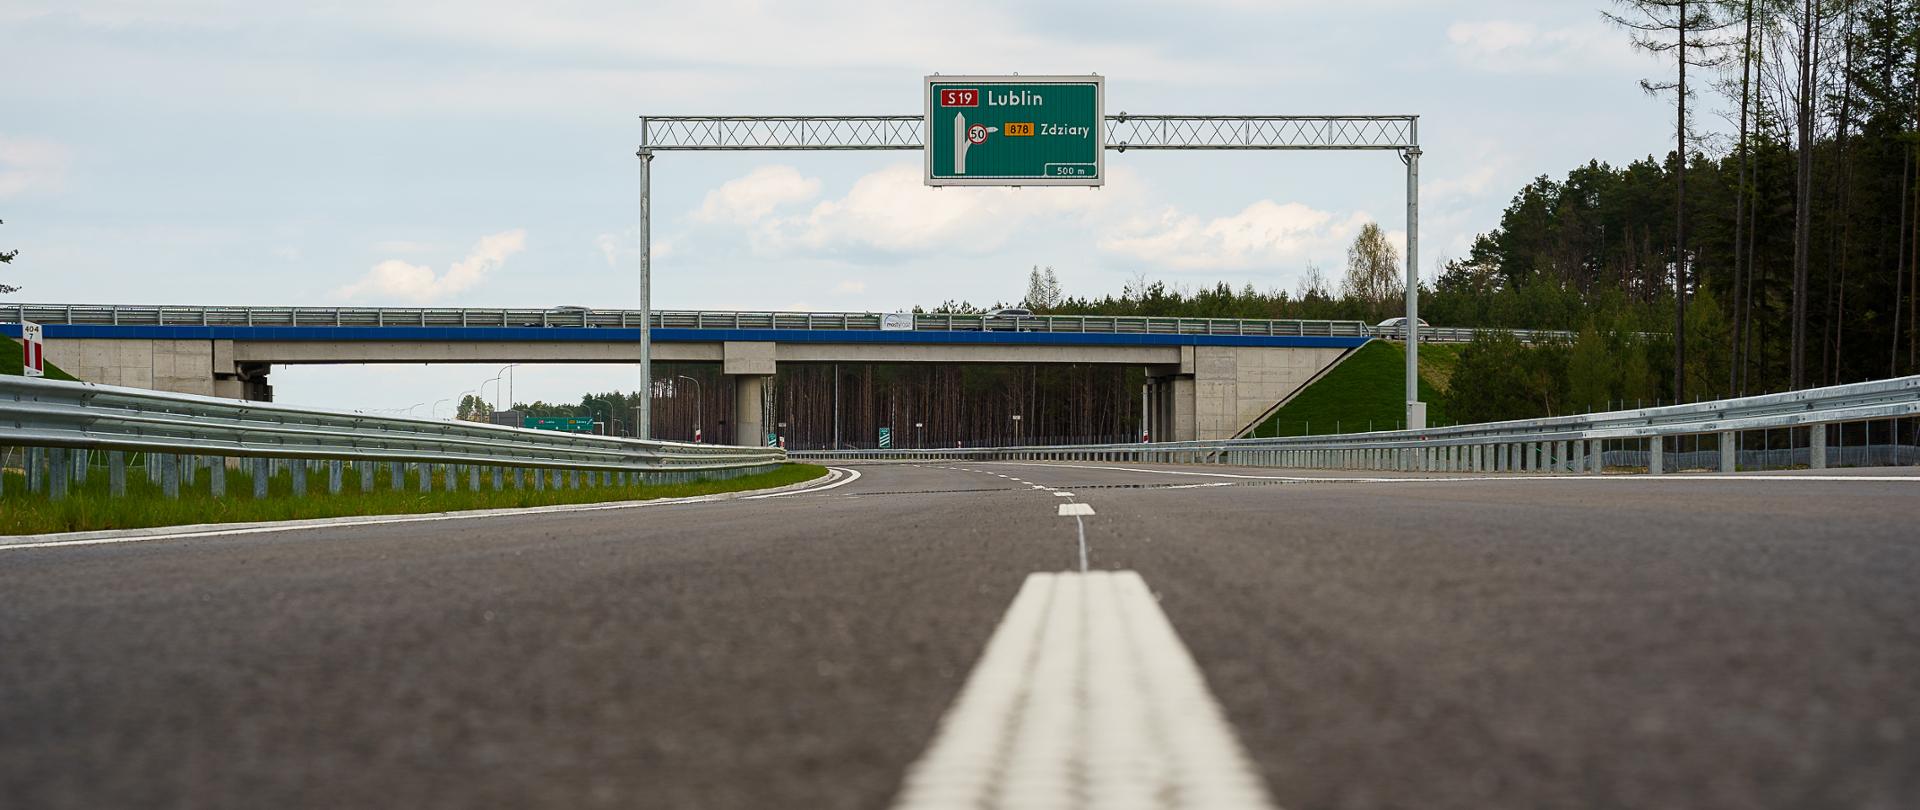 Na zdjęciu droga ekspresowa S19 w tle widać wiadukt nad drogą oraz znak z zaznaczonym kierunkiem Lublin